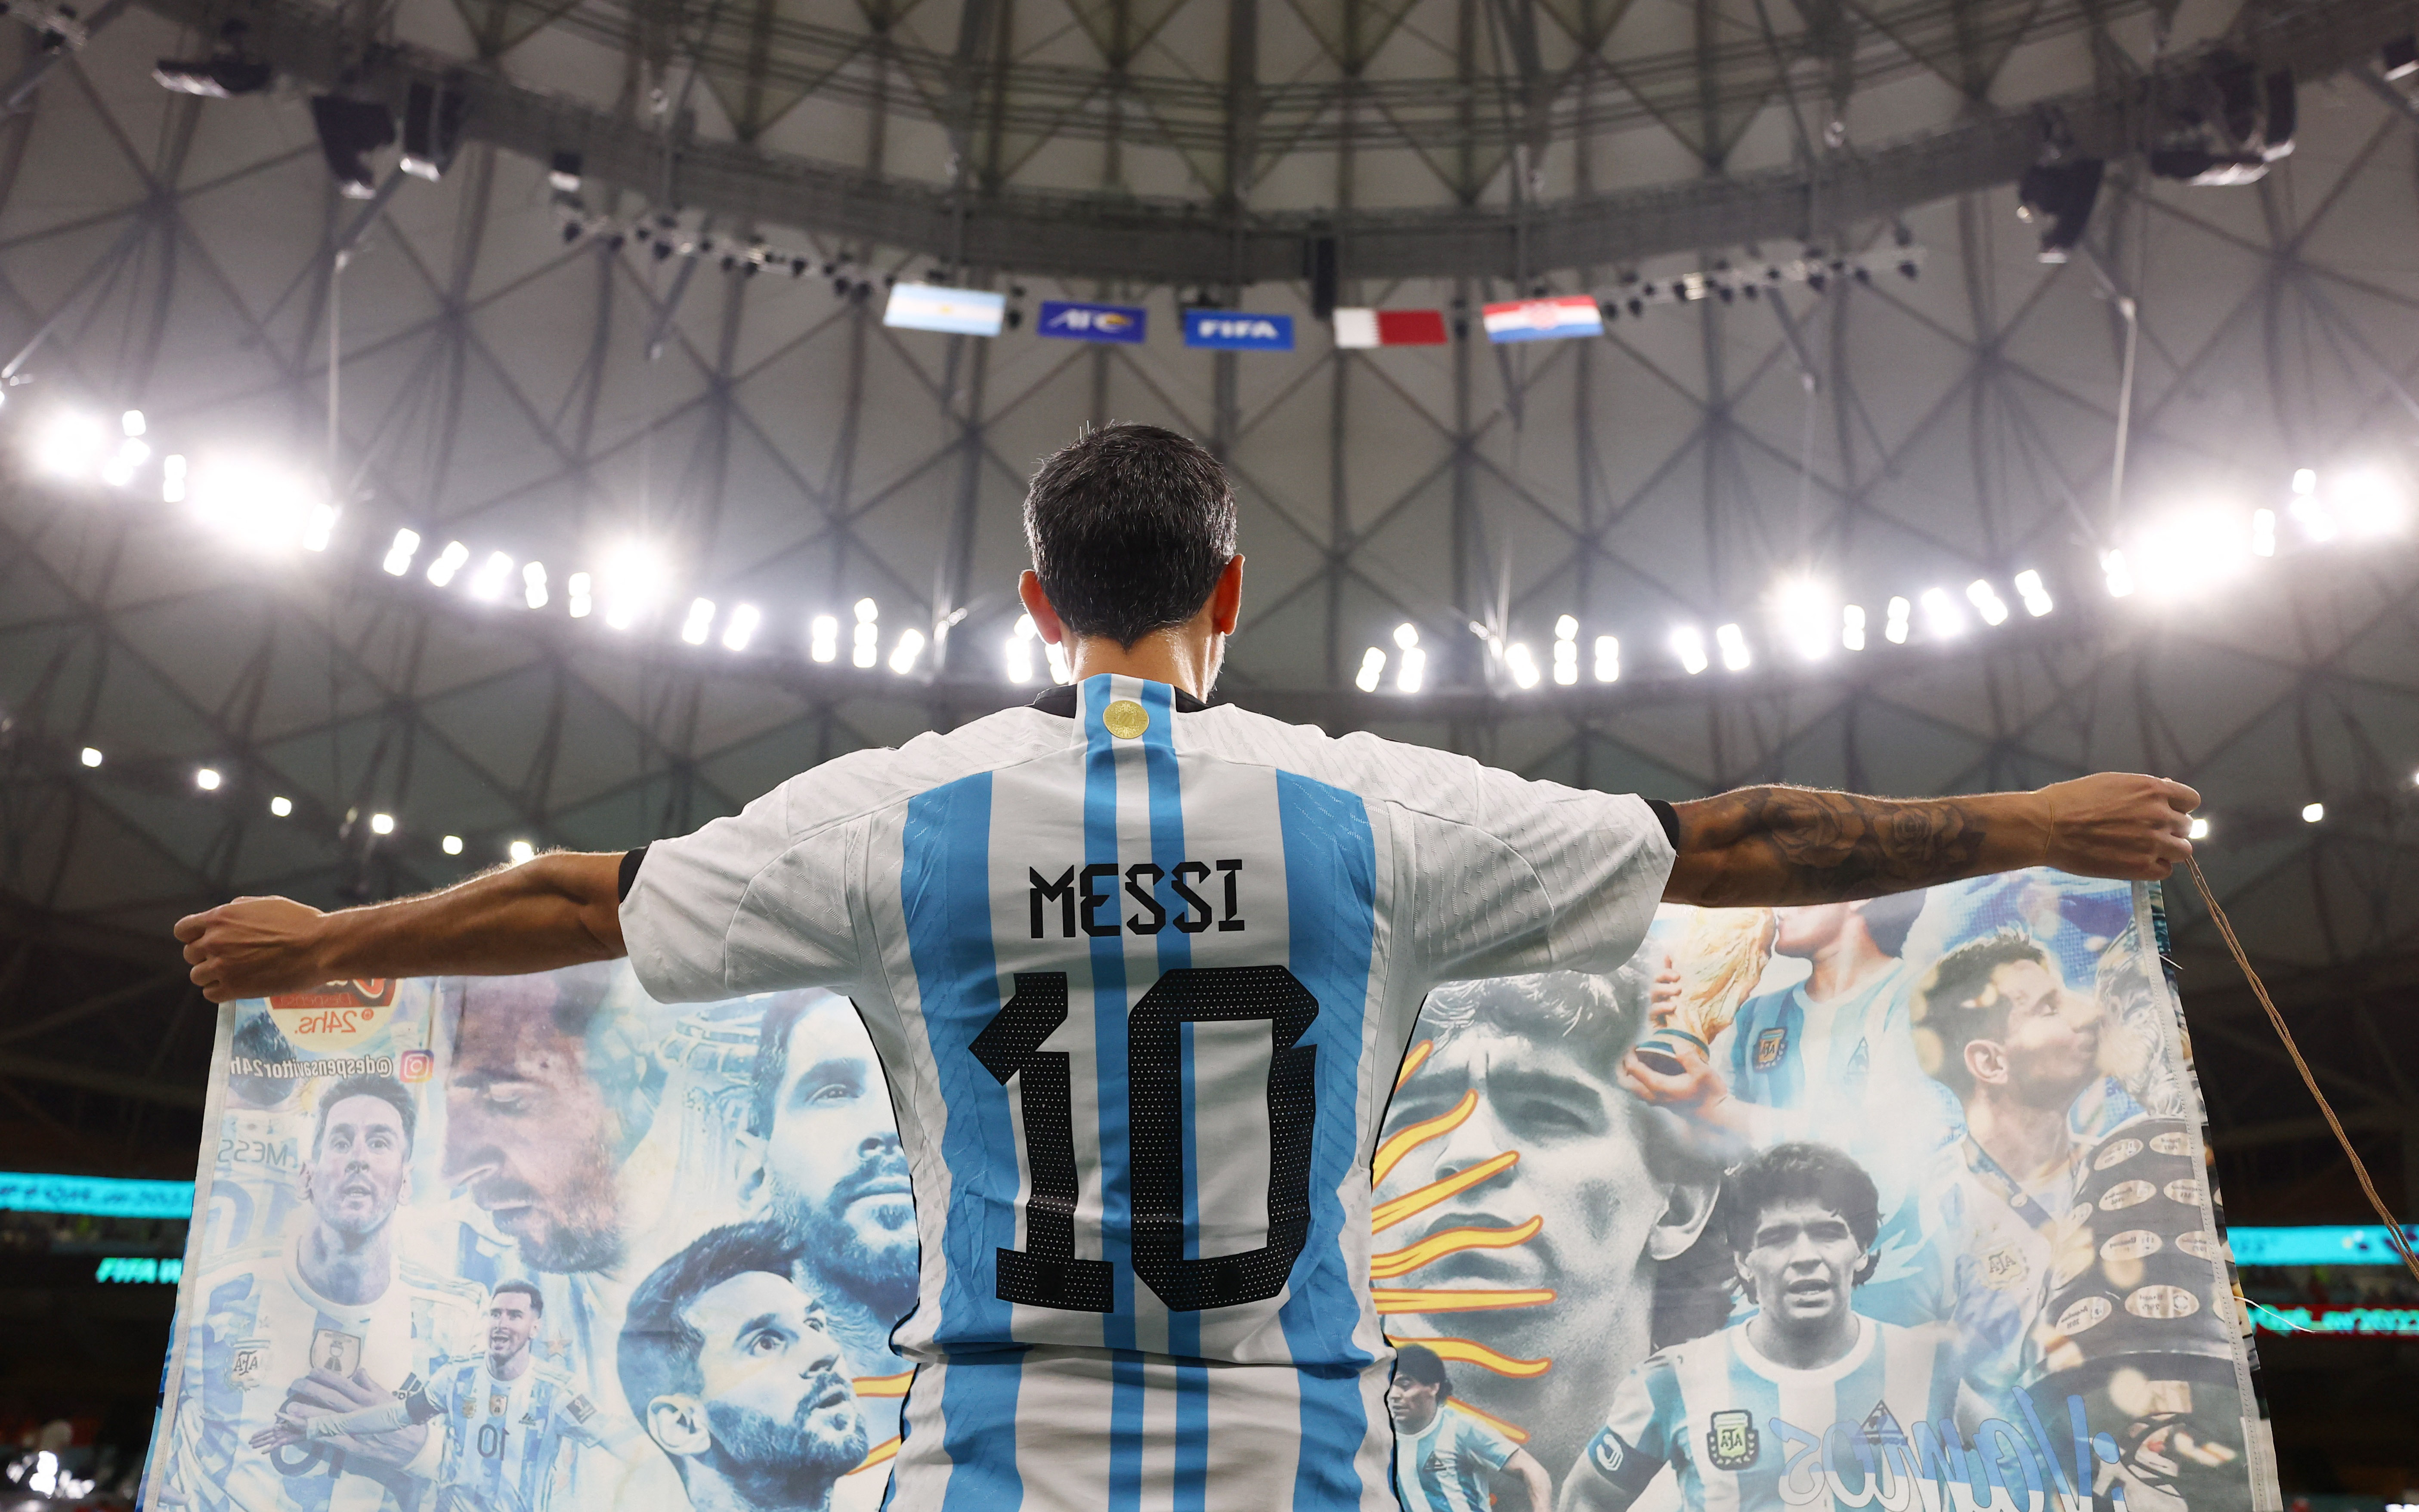 Un fanÃ¡tico con la camiseta de Messi y la bandera con Maradona como protagonista (REUTERS/Lee Smith)